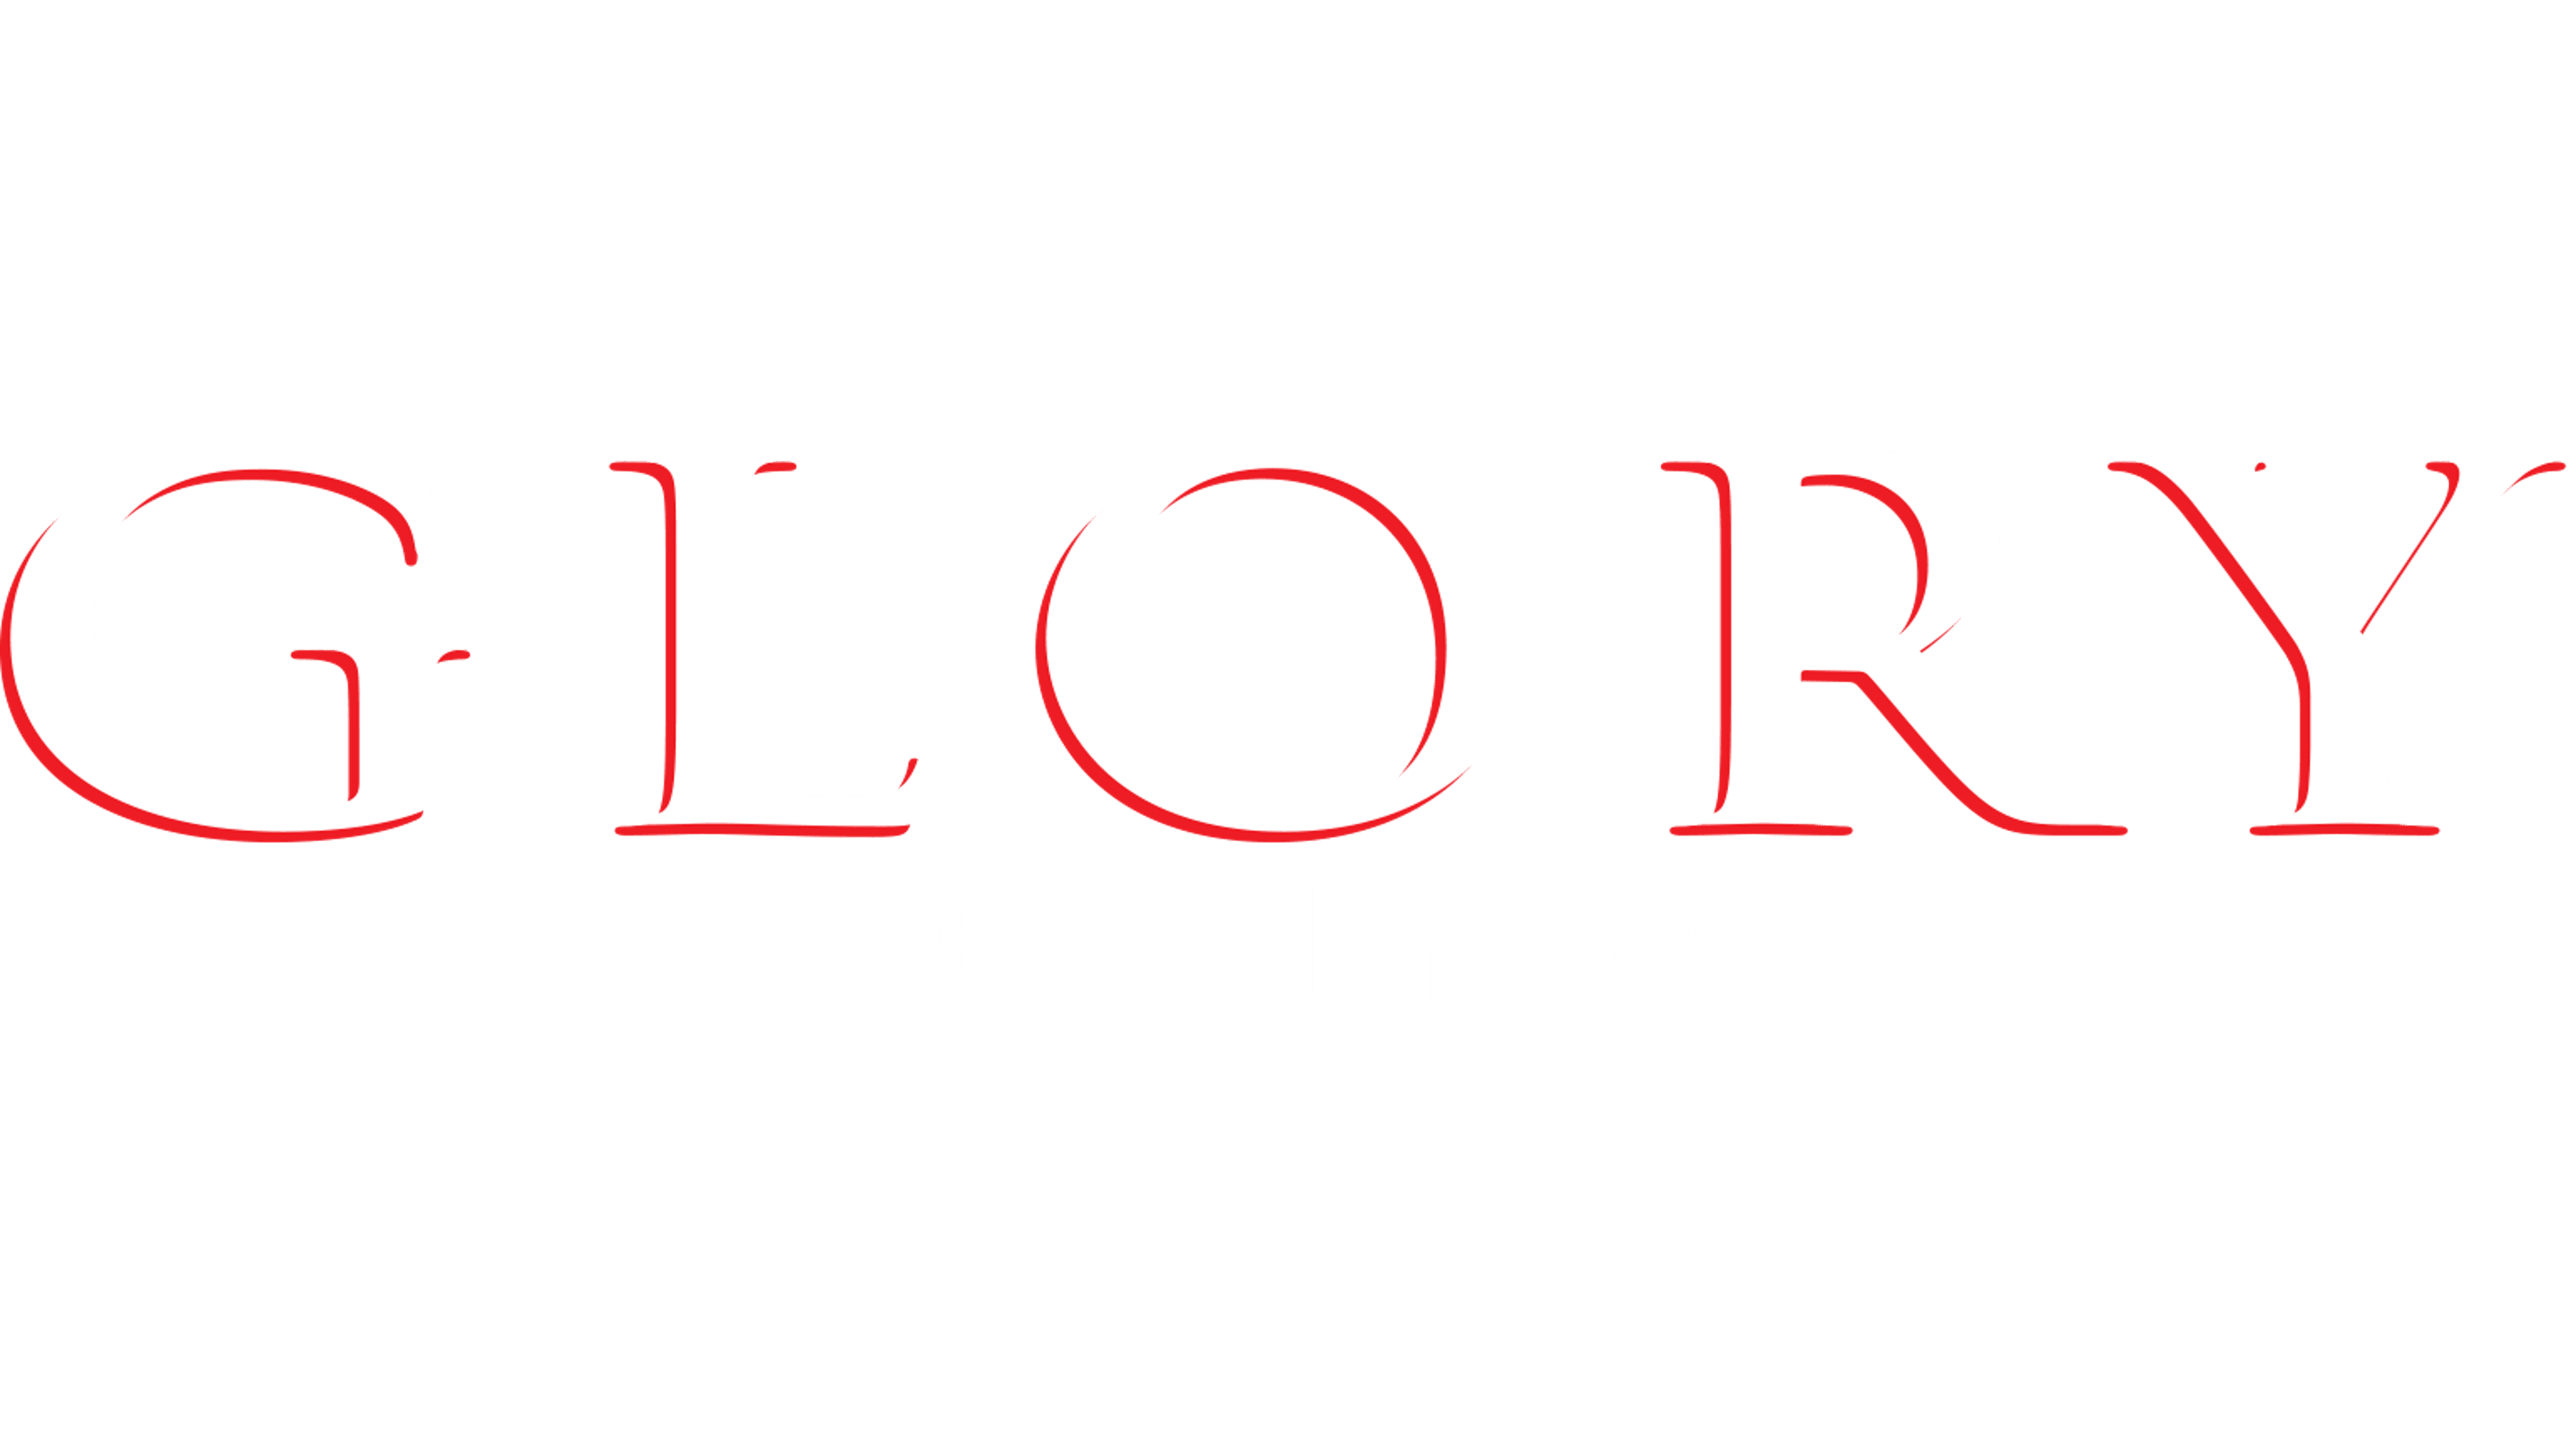 Glory - Uomini di gloria